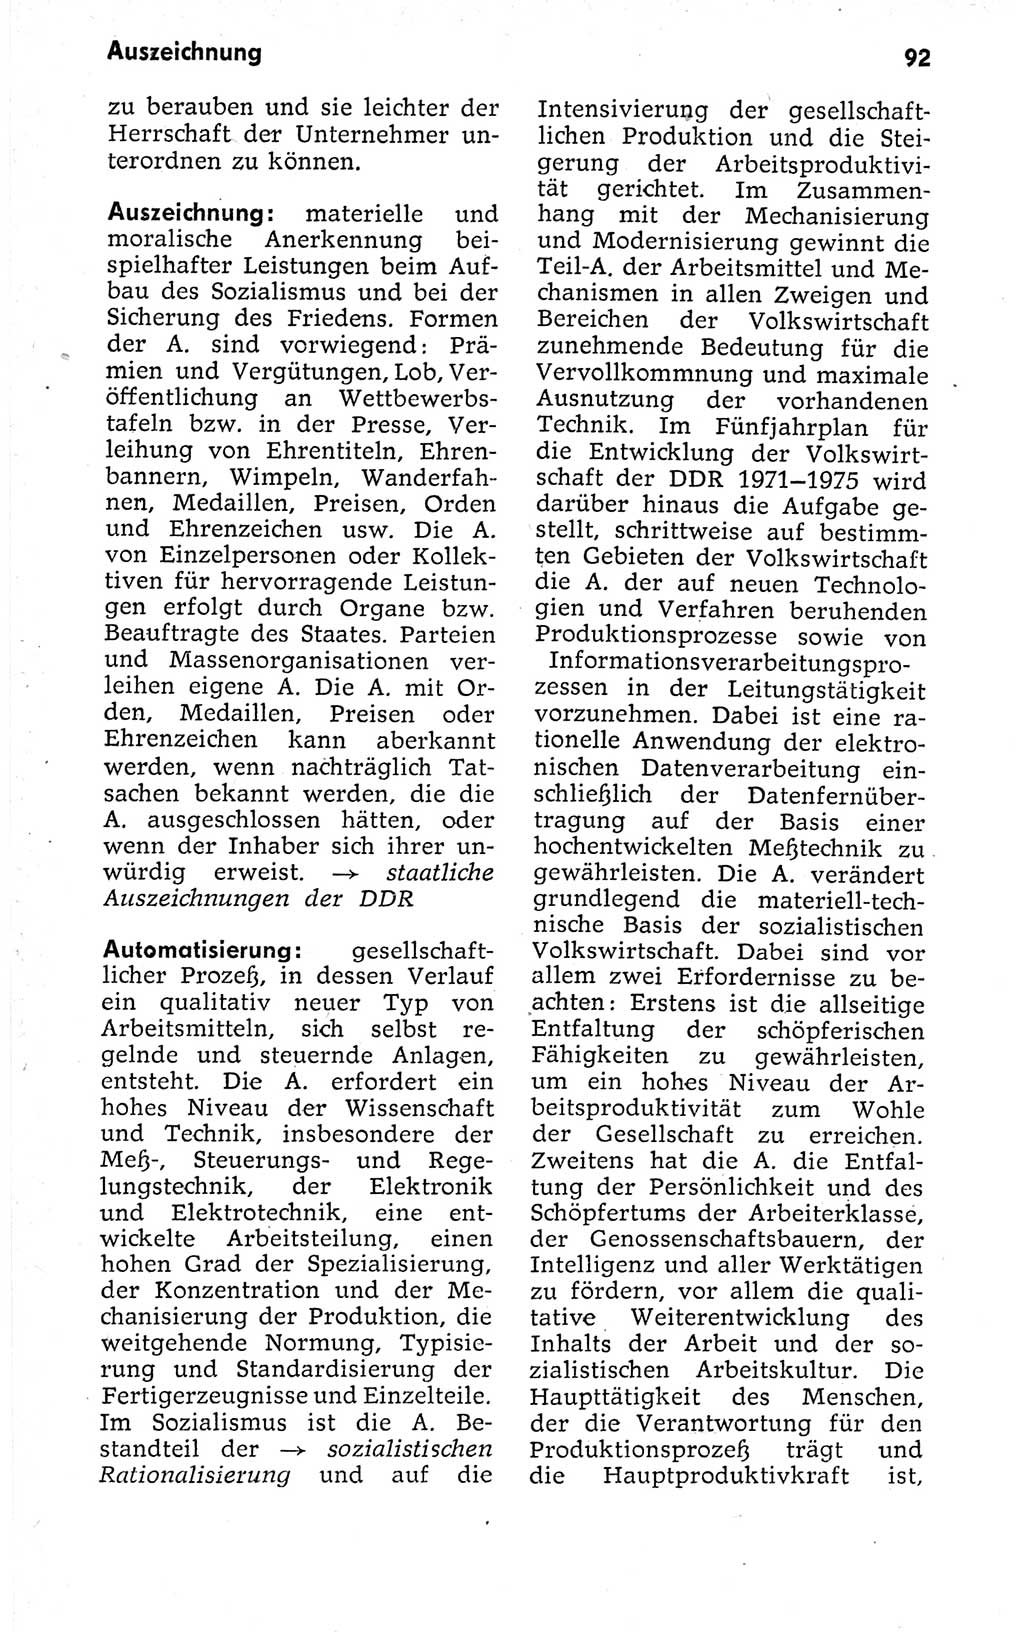 Kleines politisches Wörterbuch [Deutsche Demokratische Republik (DDR)] 1973, Seite 92 (Kl. pol. Wb. DDR 1973, S. 92)